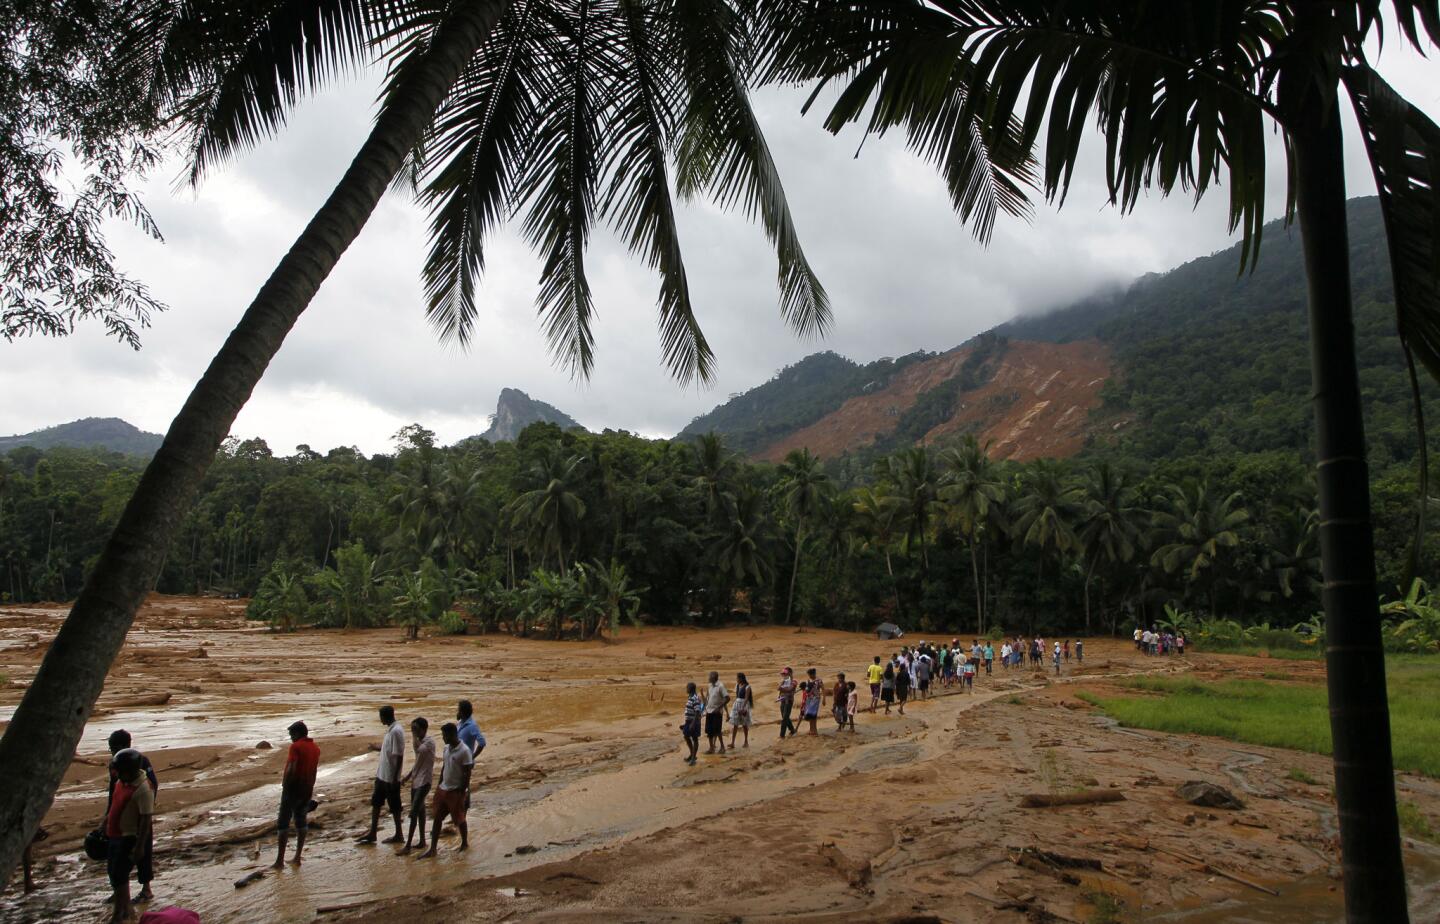 Sri Lanka landslides